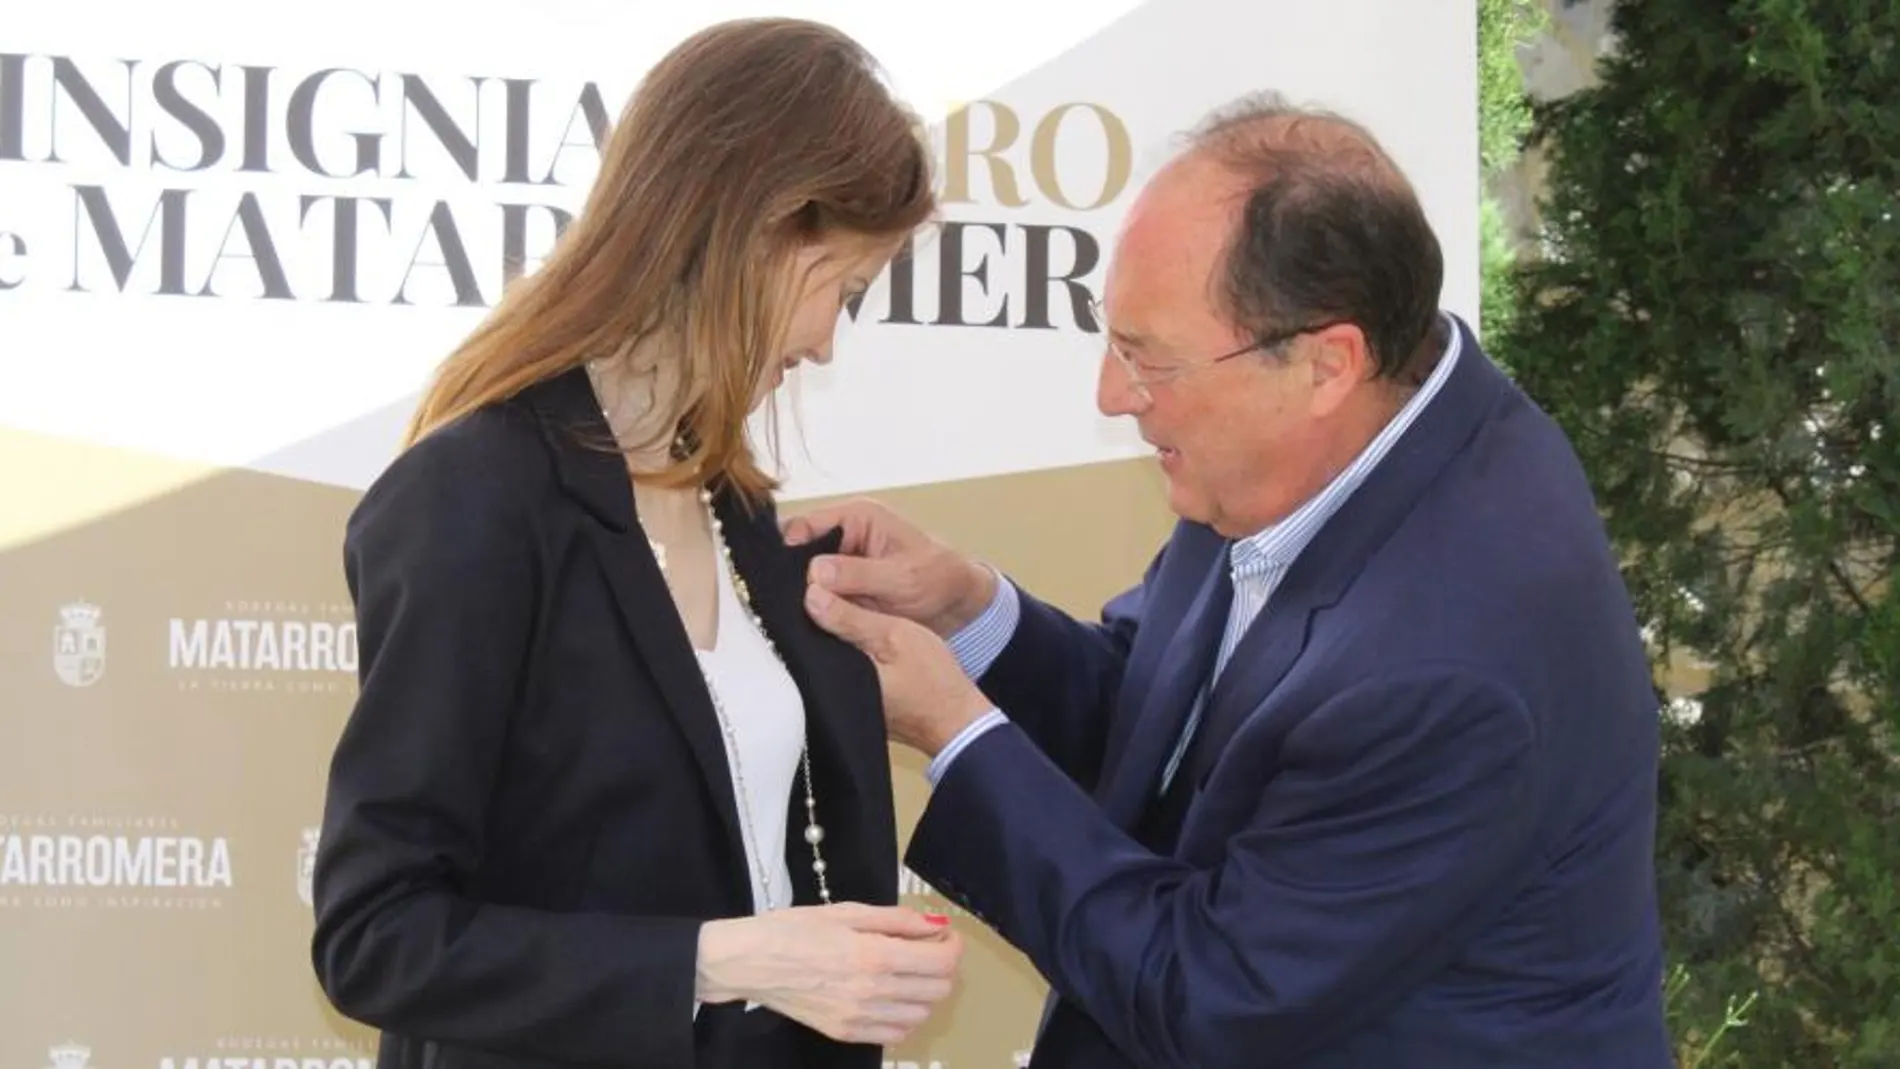 La directora de orquesta española Inma Shara, recibe de manos de Carlos Moro, presidente de Bodegas Familiares Matarromera, la Insignia de Oro de Matarromera